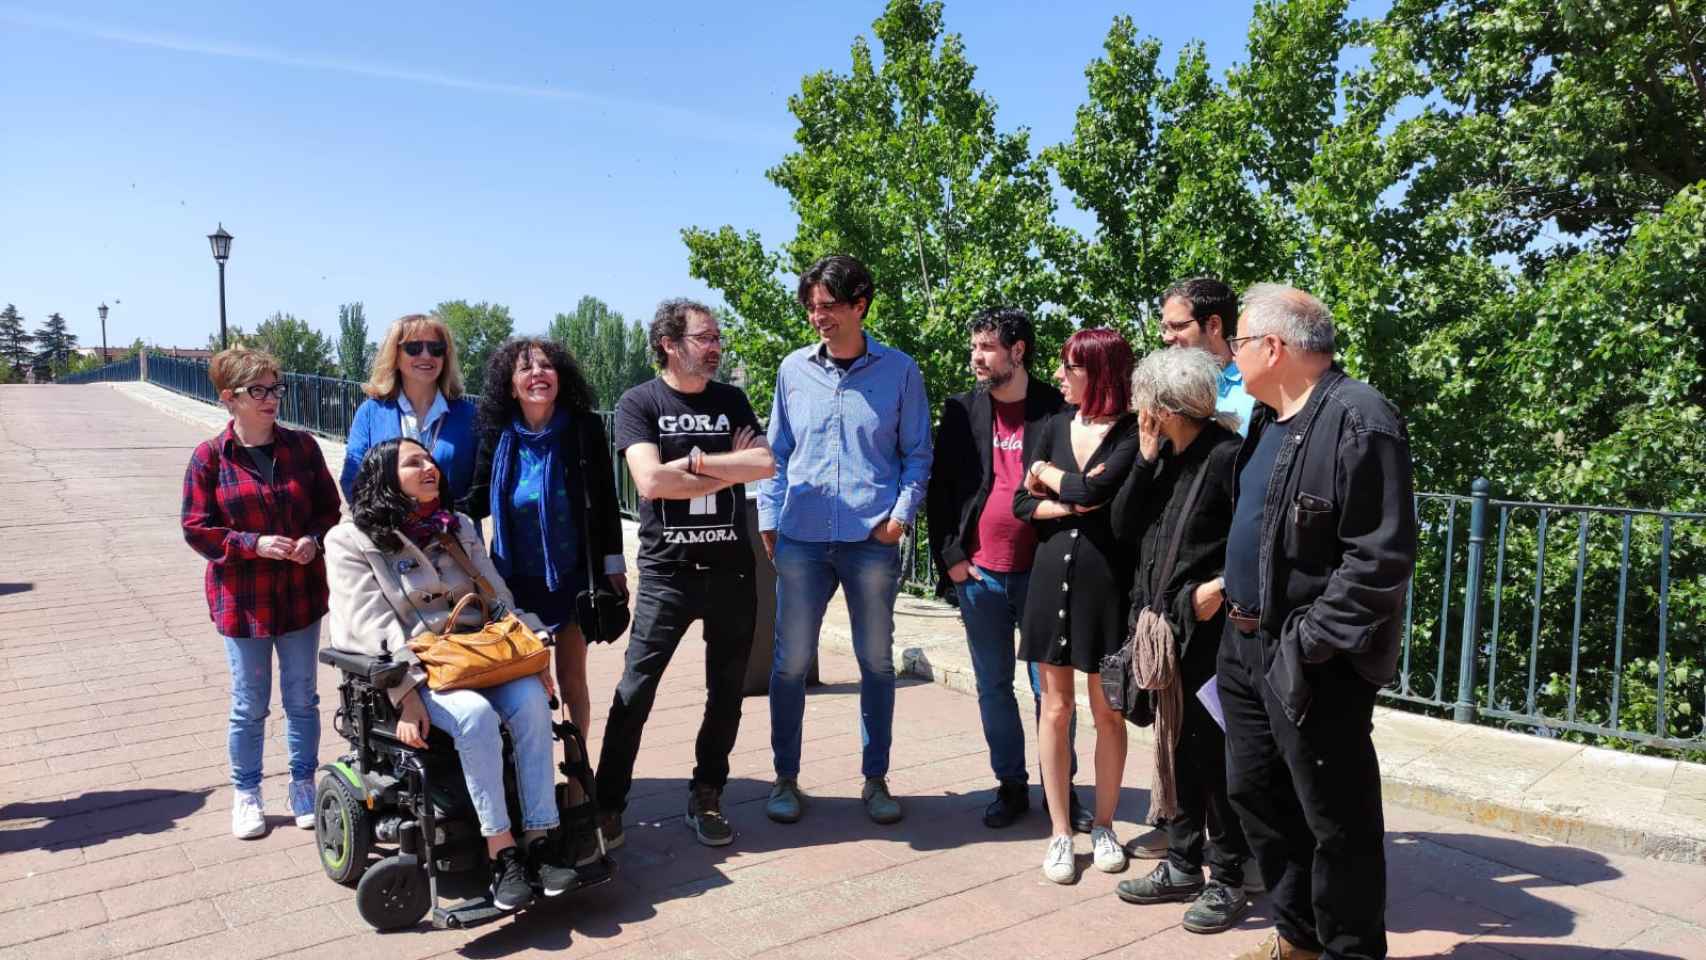 El coordinador de Izquierda Unida Castilla y León, Juan Gascón, visita Zamora para apoyar la candidatura de Francisco Guarido